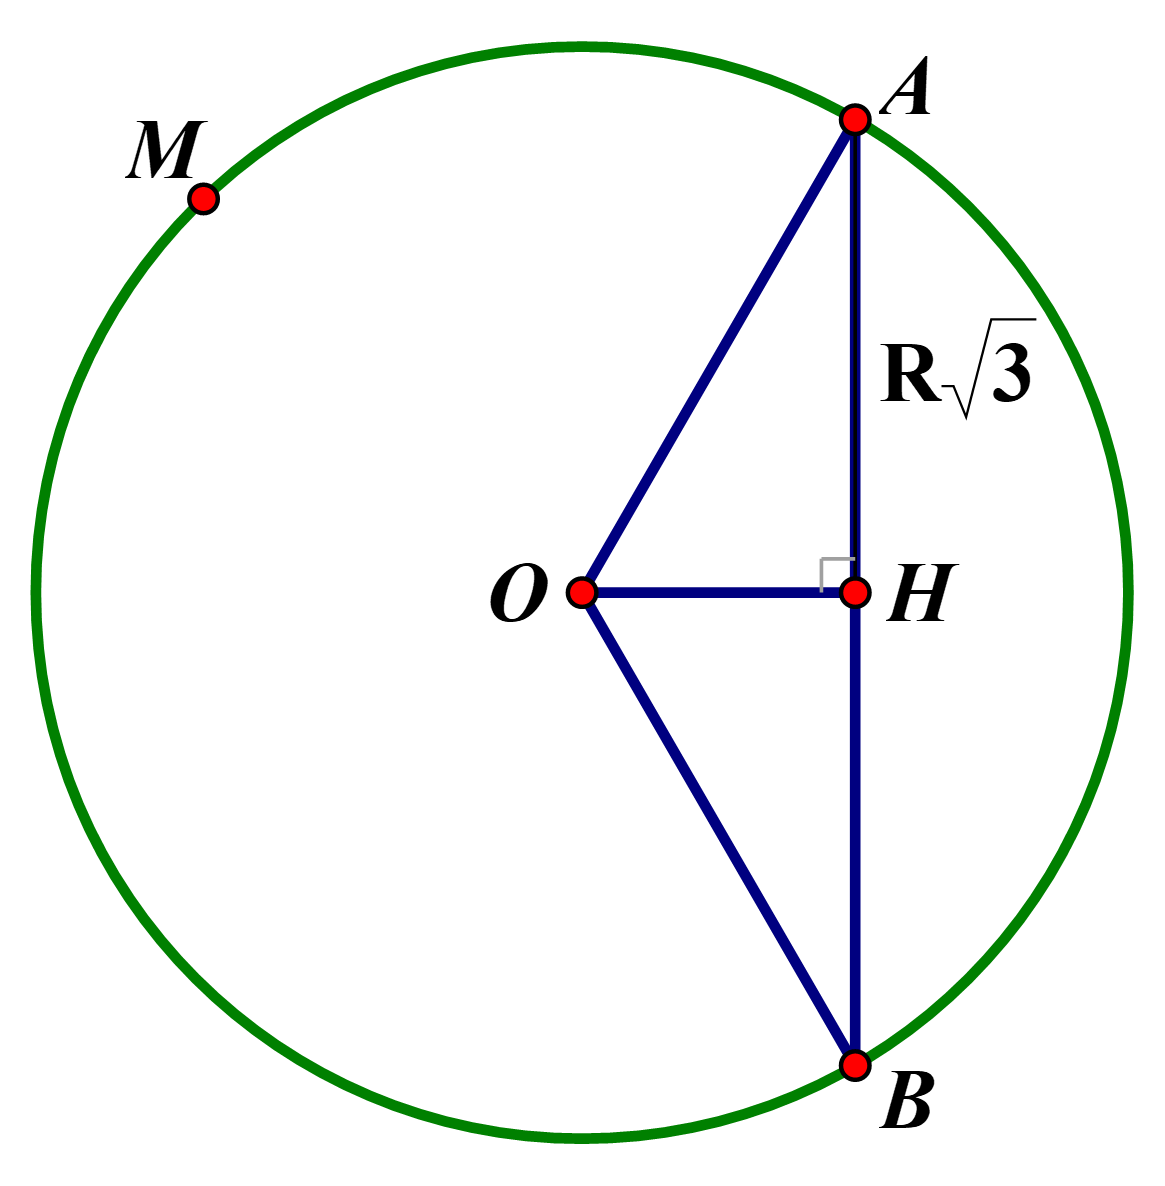 Cho (O;R), AB là dây cung của đường (O) sao cho AB = R căn 3. M là một điểm trên cung lớn AB. Số đo cung AMB là bao nhiêu (ảnh 1)